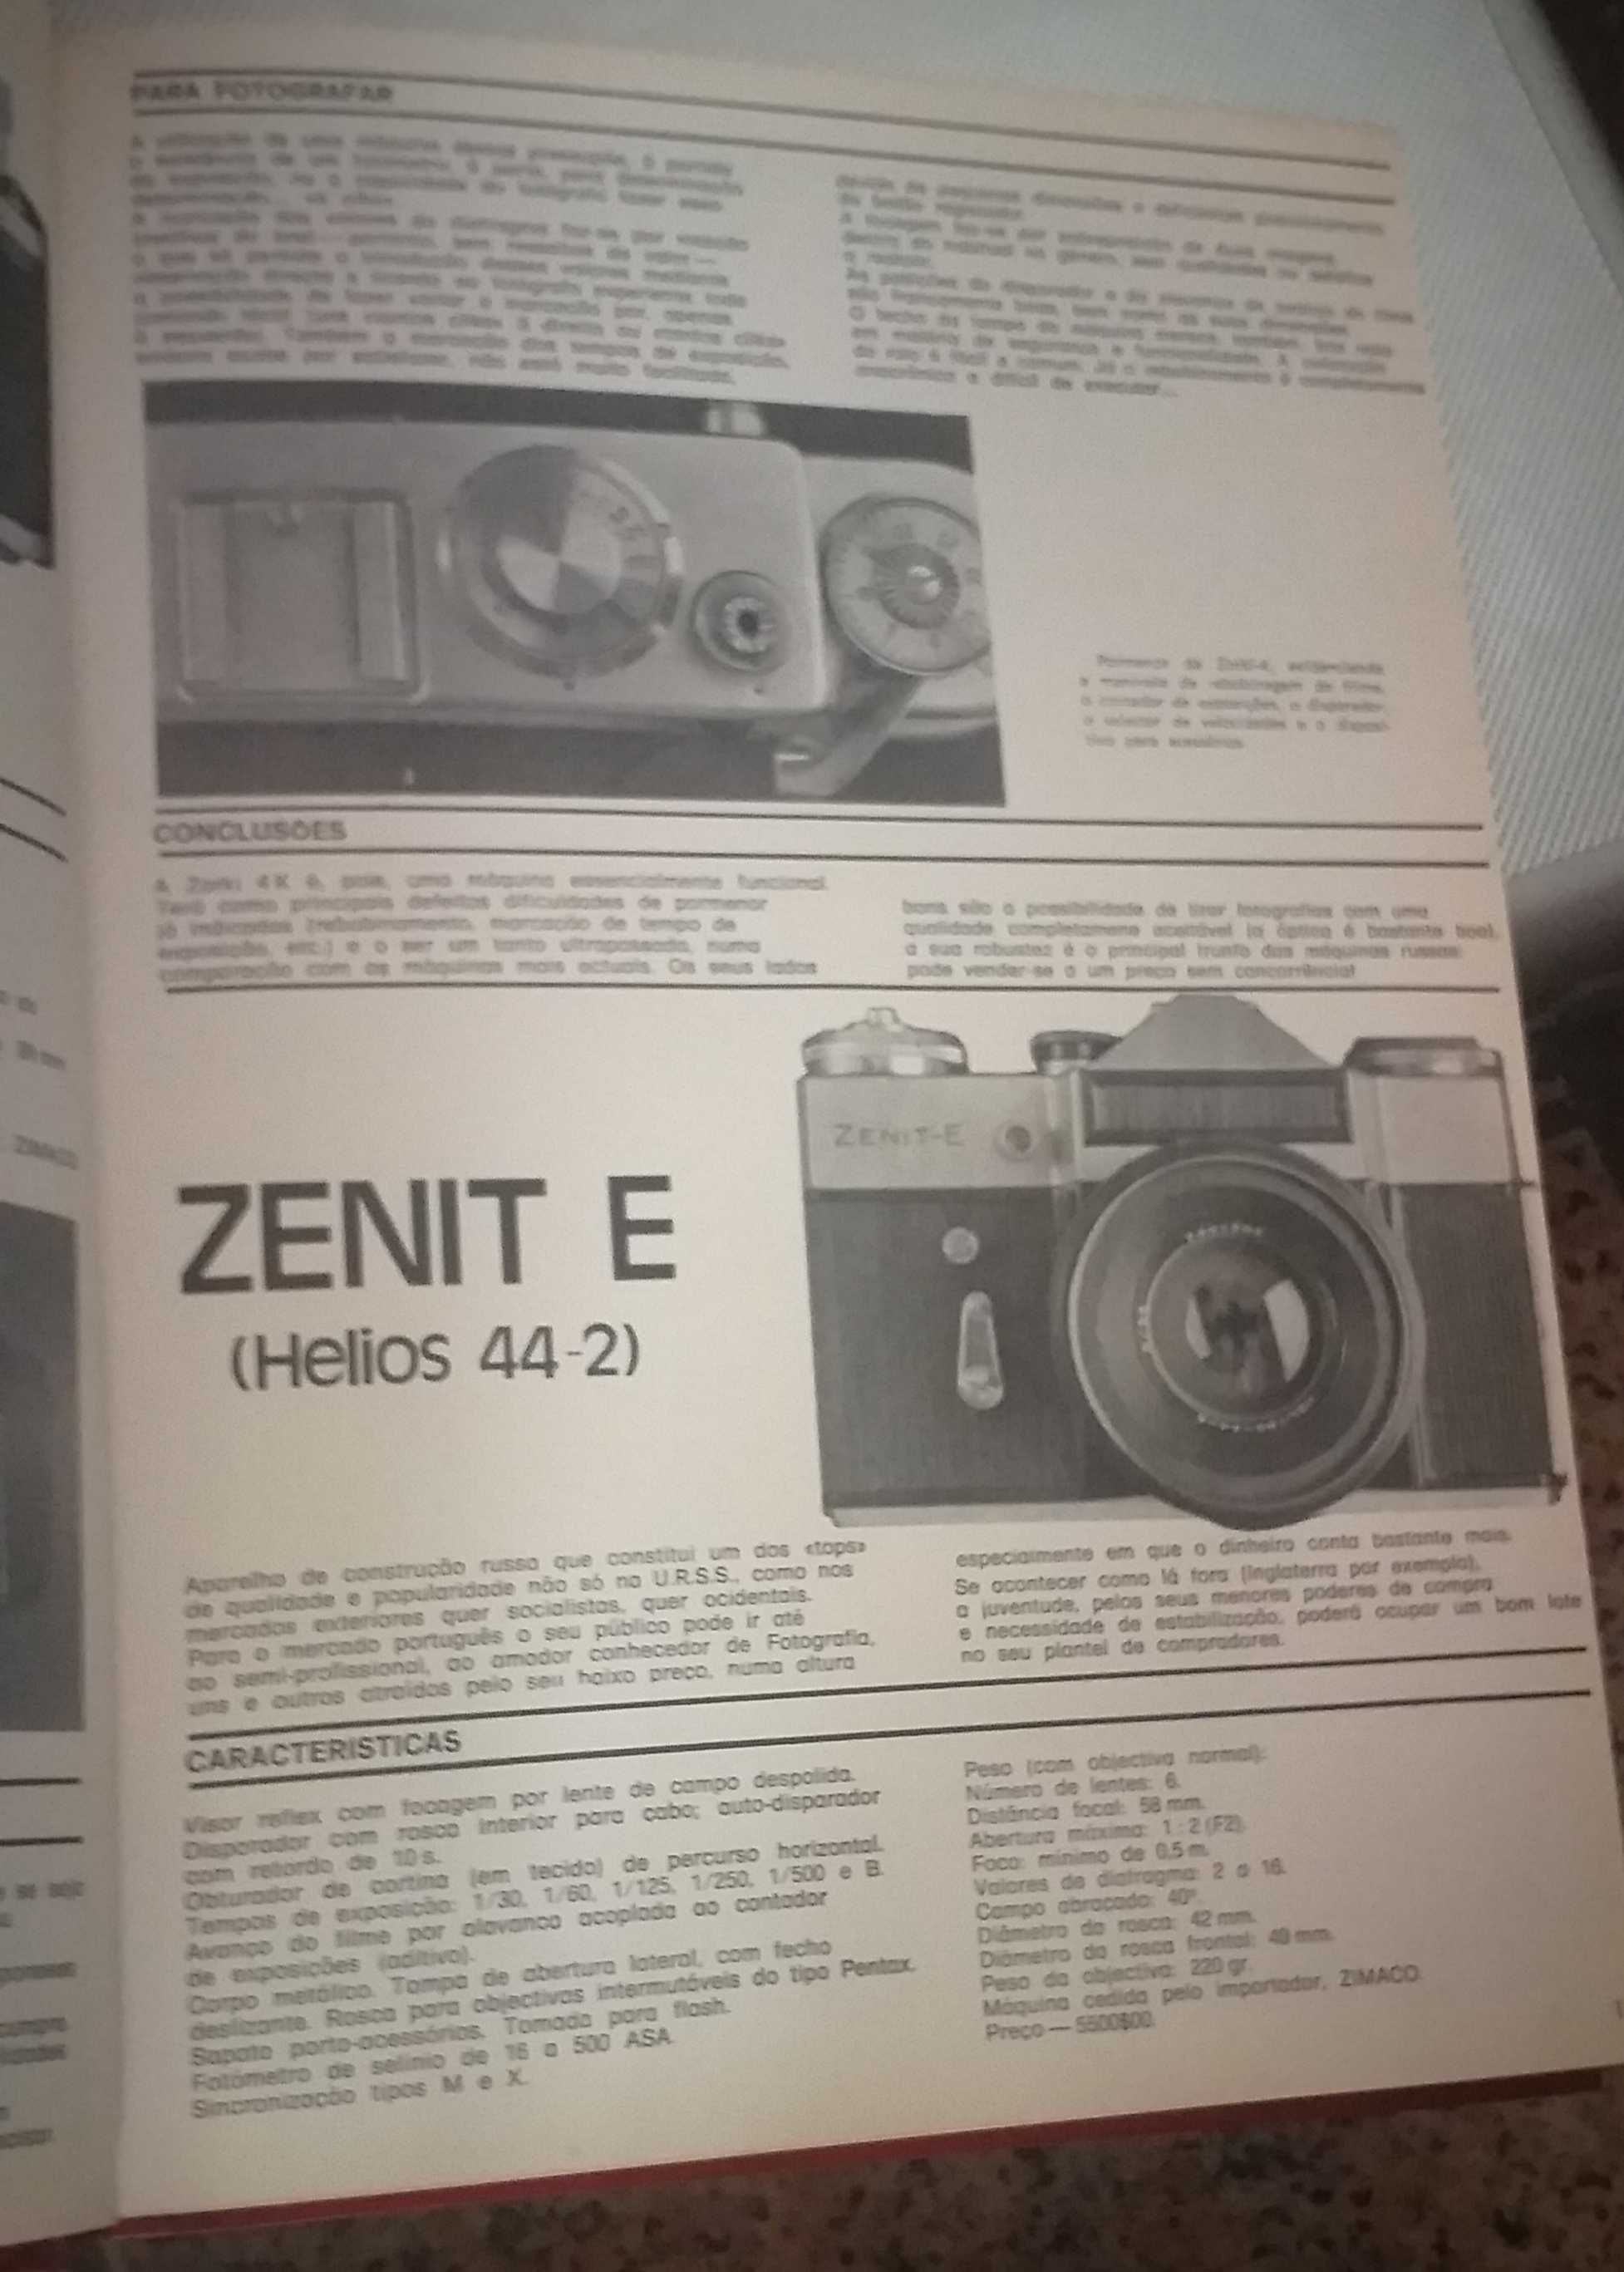 Revista técnica de fotografia, cinema e som dos anos 70